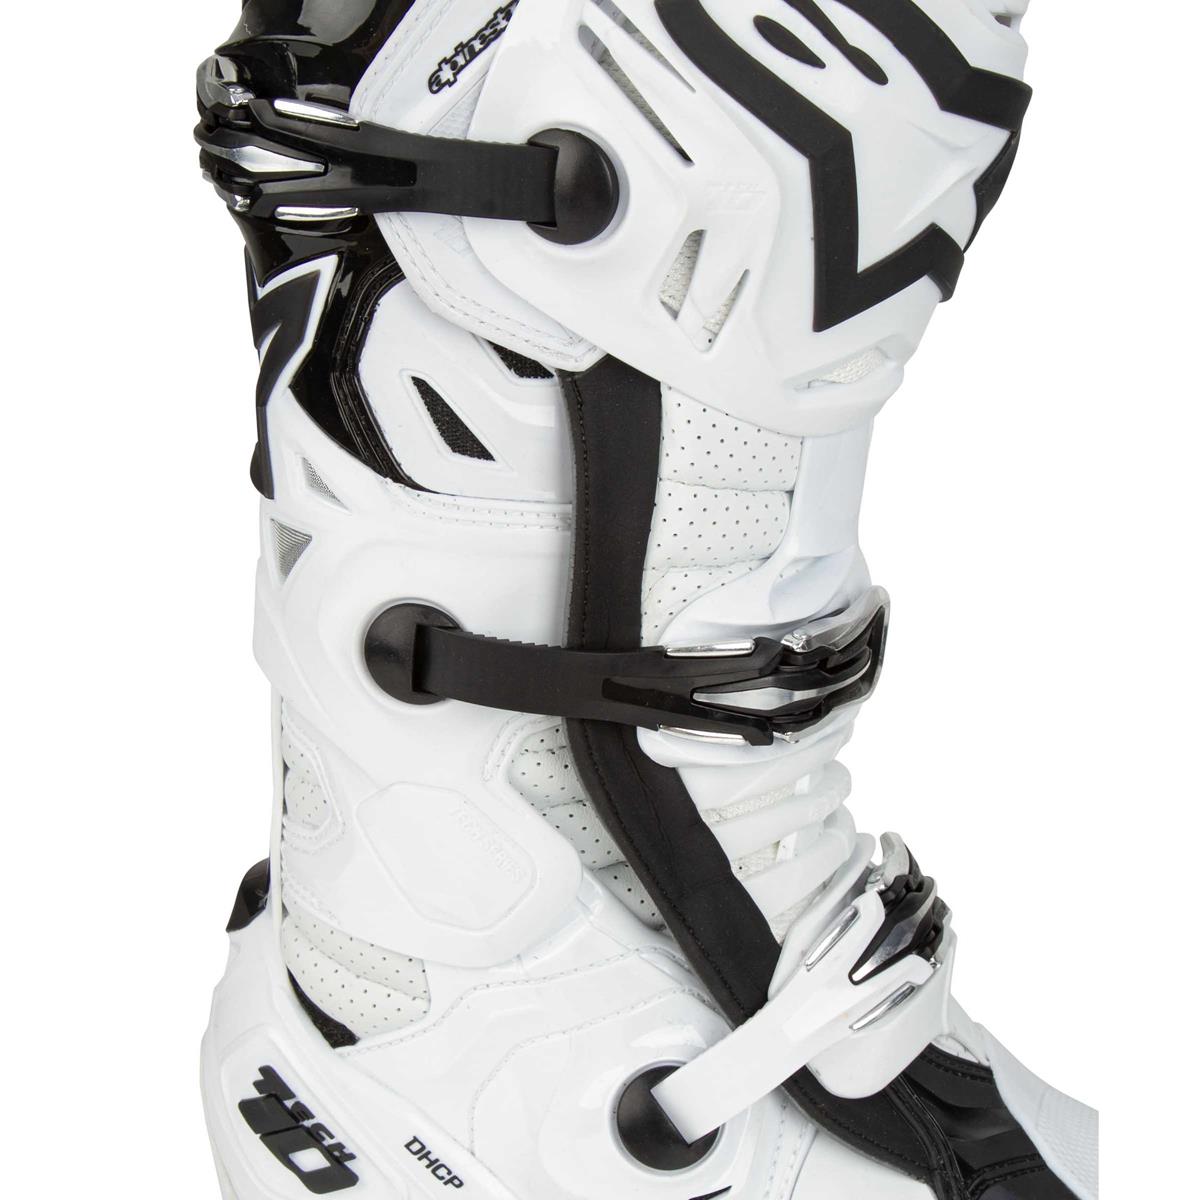  Alpinestars Men's Tech Motocross 7 Boots (White, 10